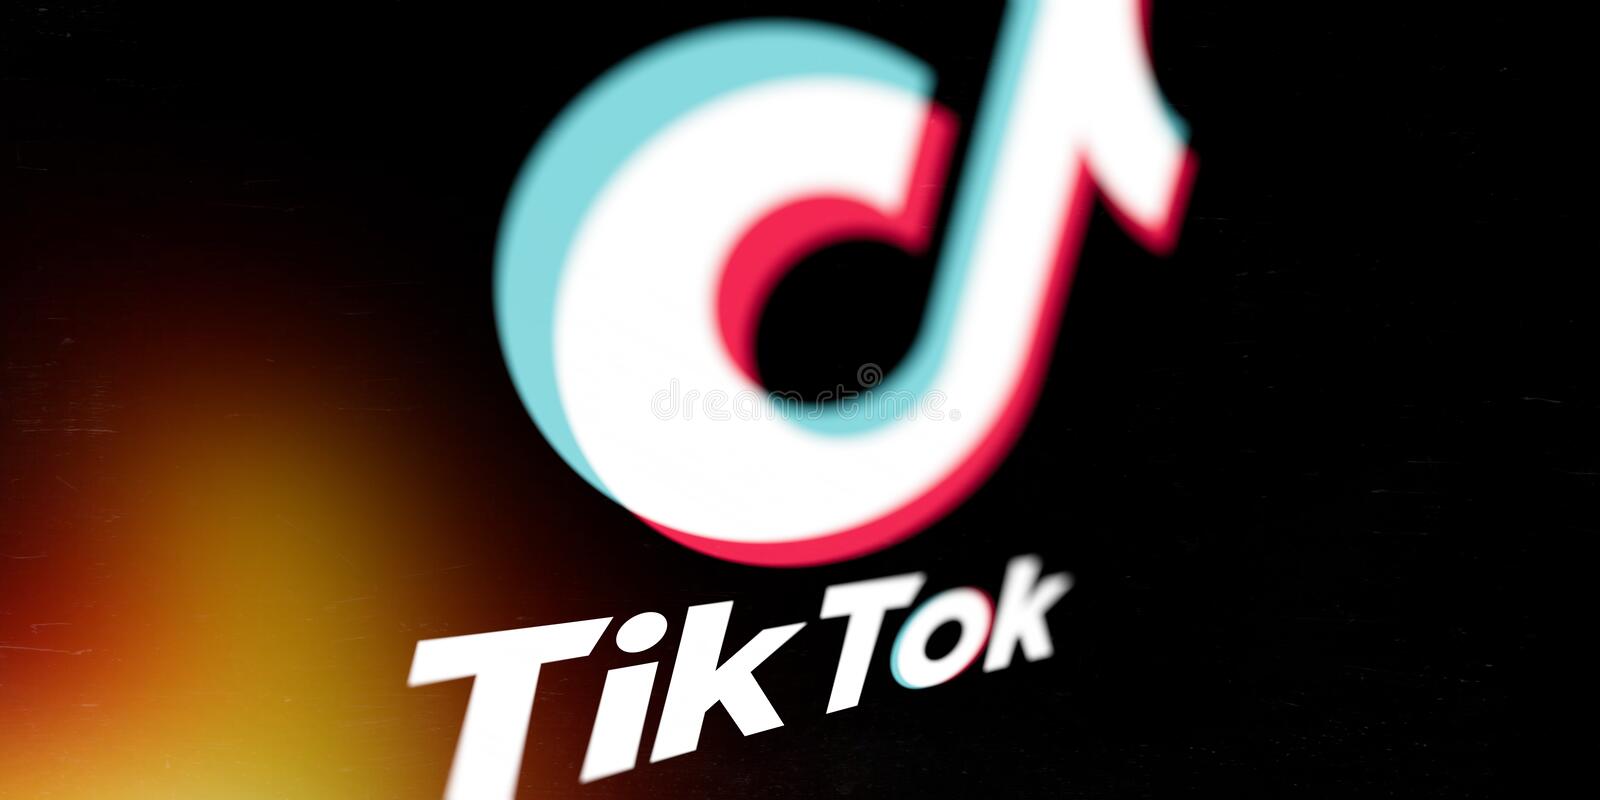 Time's up on TikTok